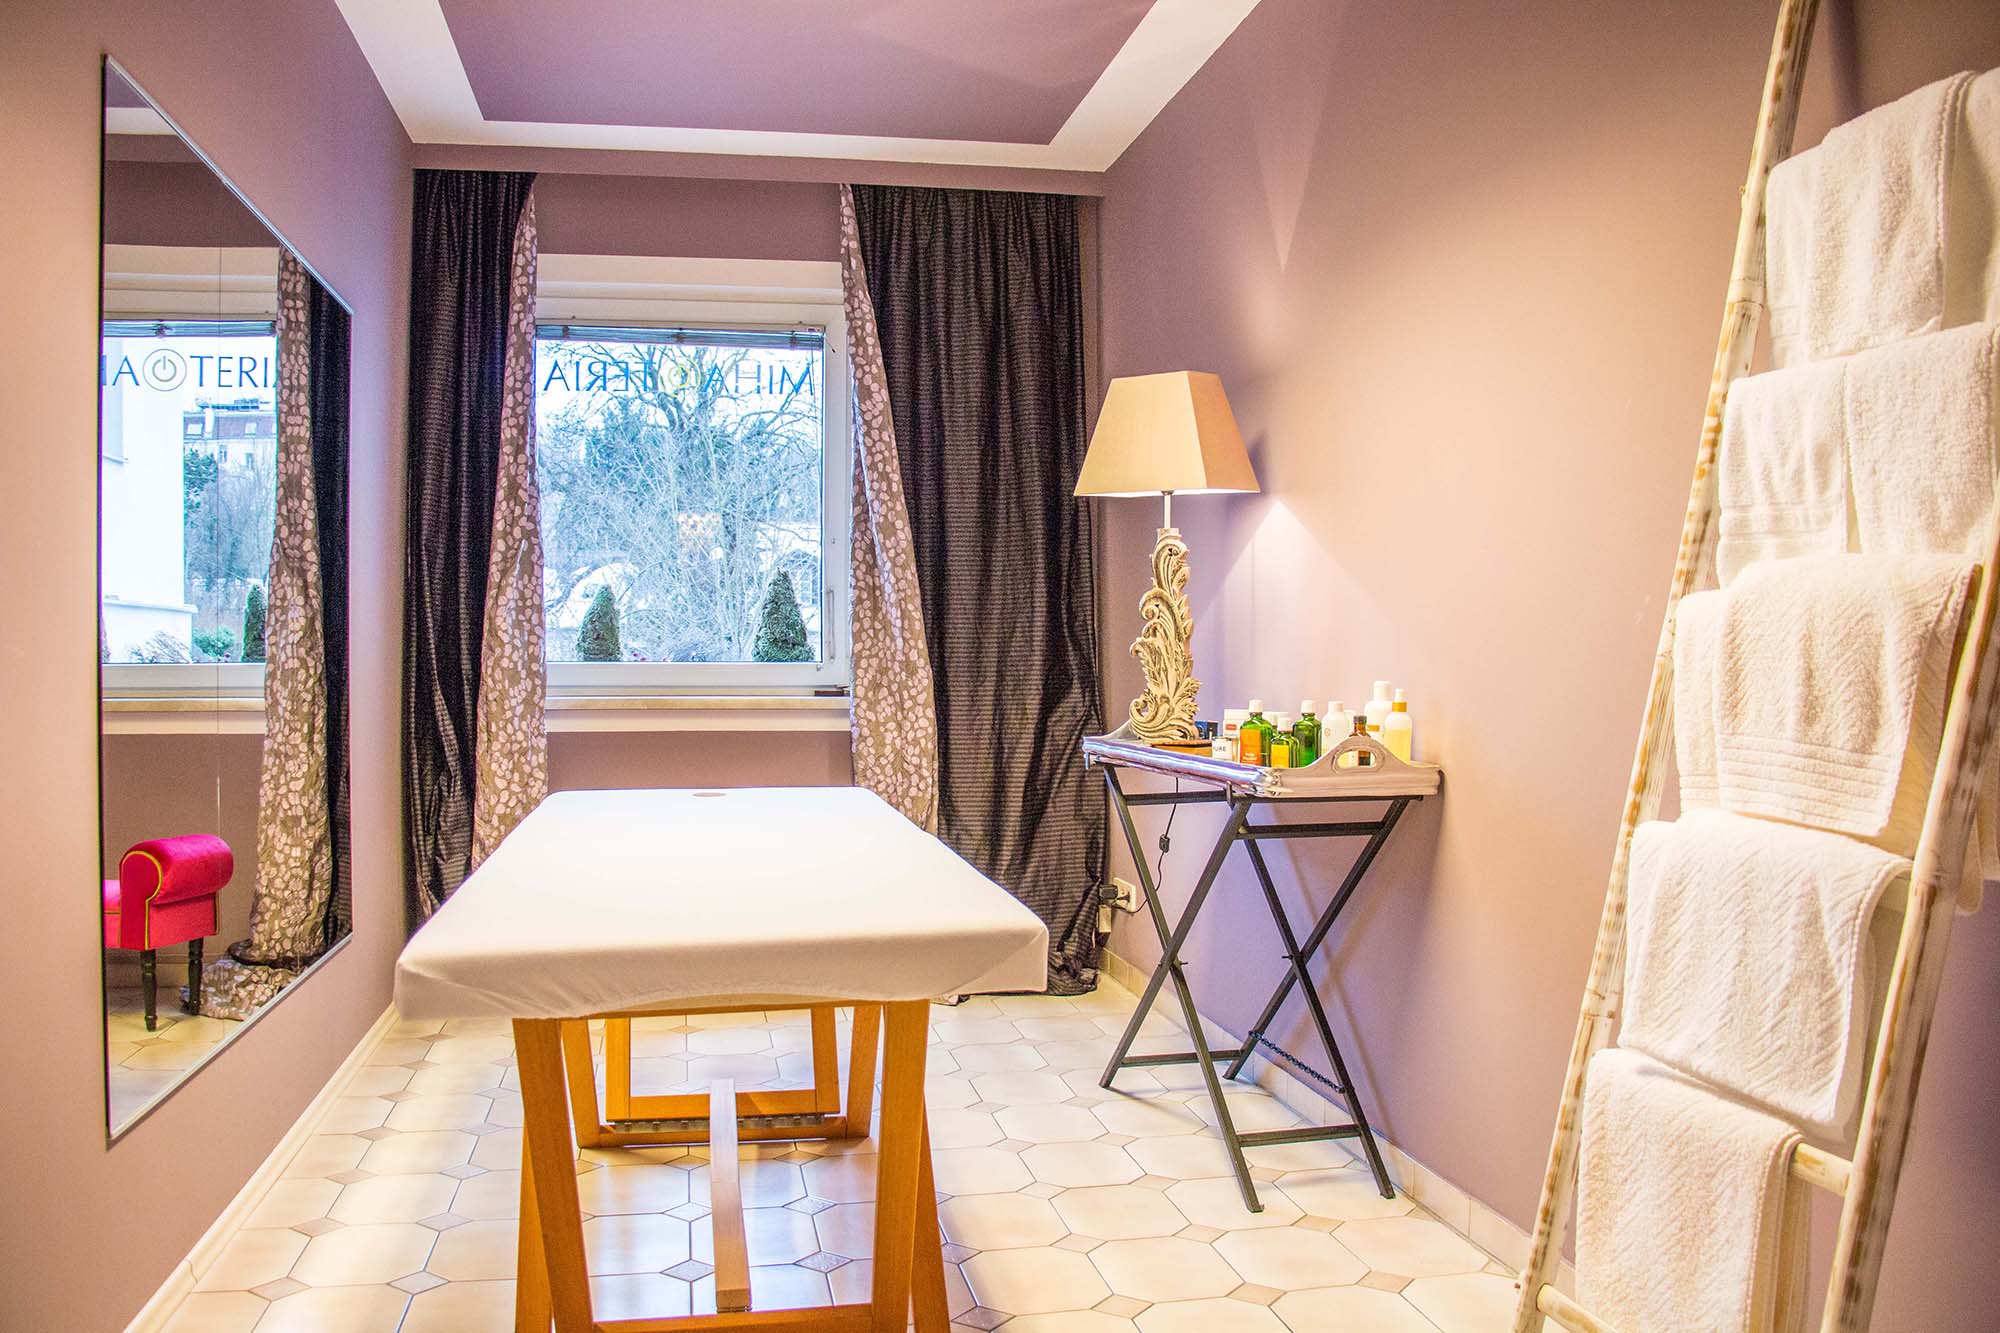 Kleines Zimmer mit pudrig abgetönter lilafarbener Wand, Massageliege, kleinem Sideboard und weißem Handtuchständer aus Holz.